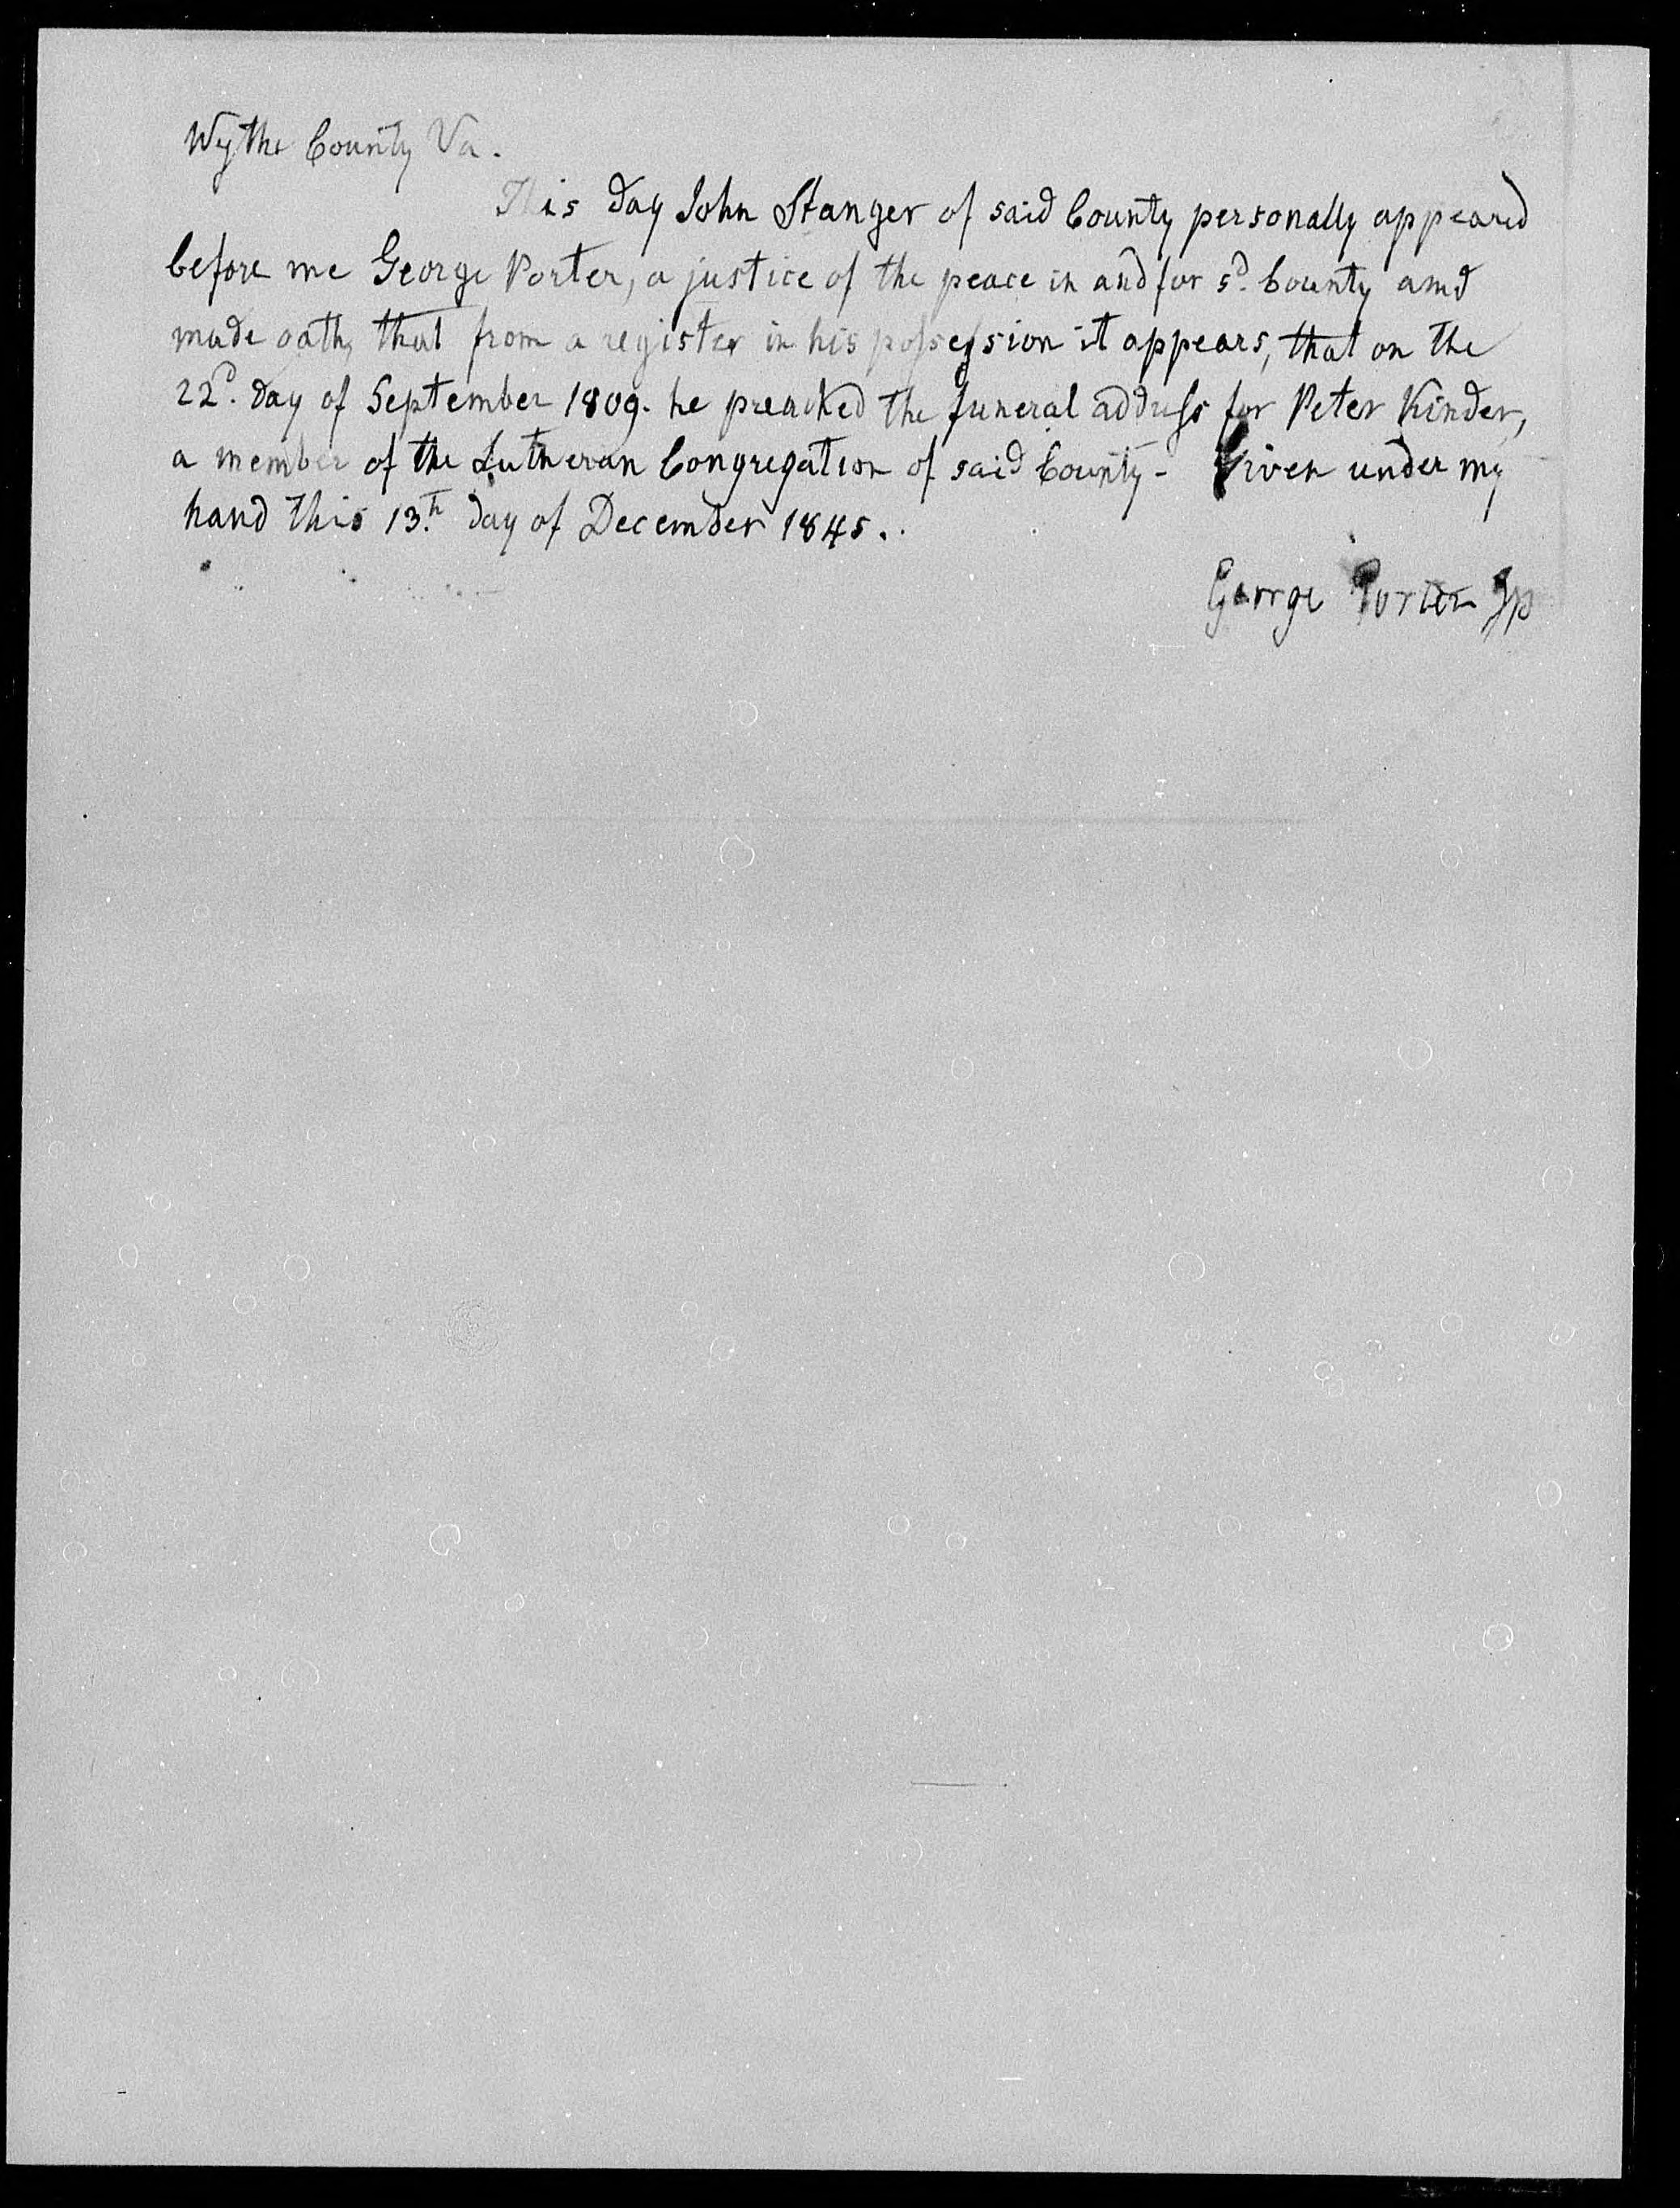 Affidavit of John Stanger concerning Peter Kinder, 13 December 1845, page 1